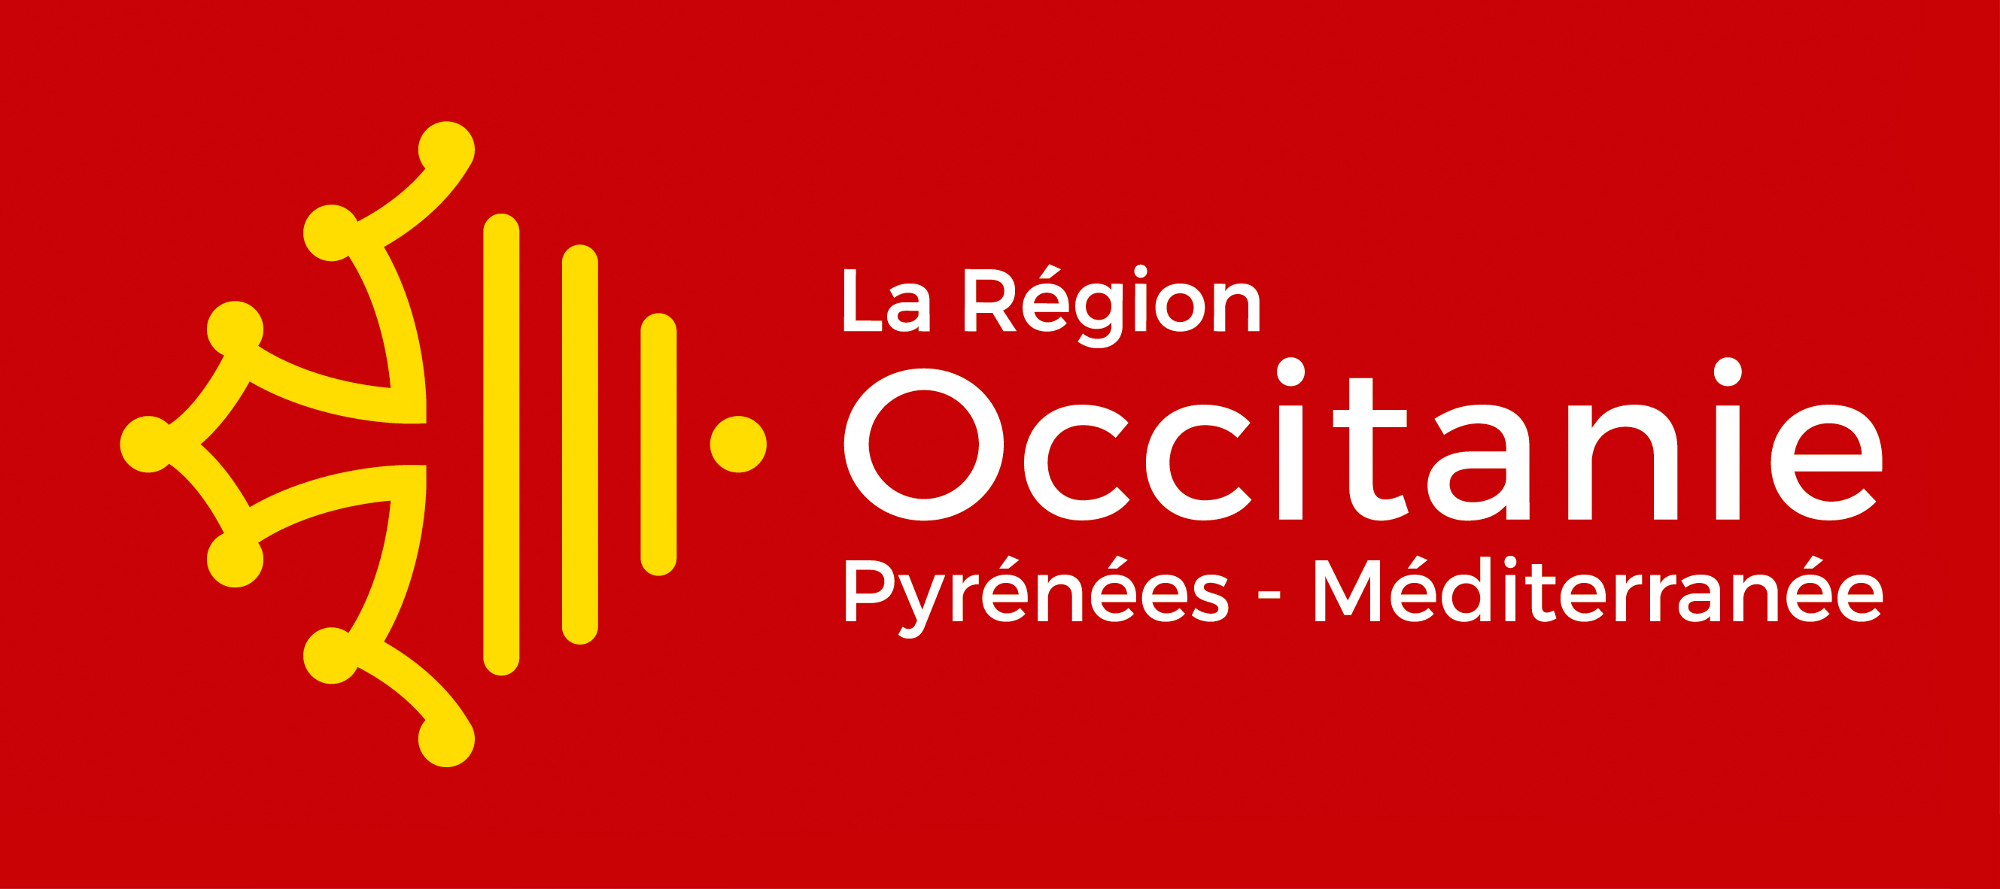 Carif-Oref Occitanie